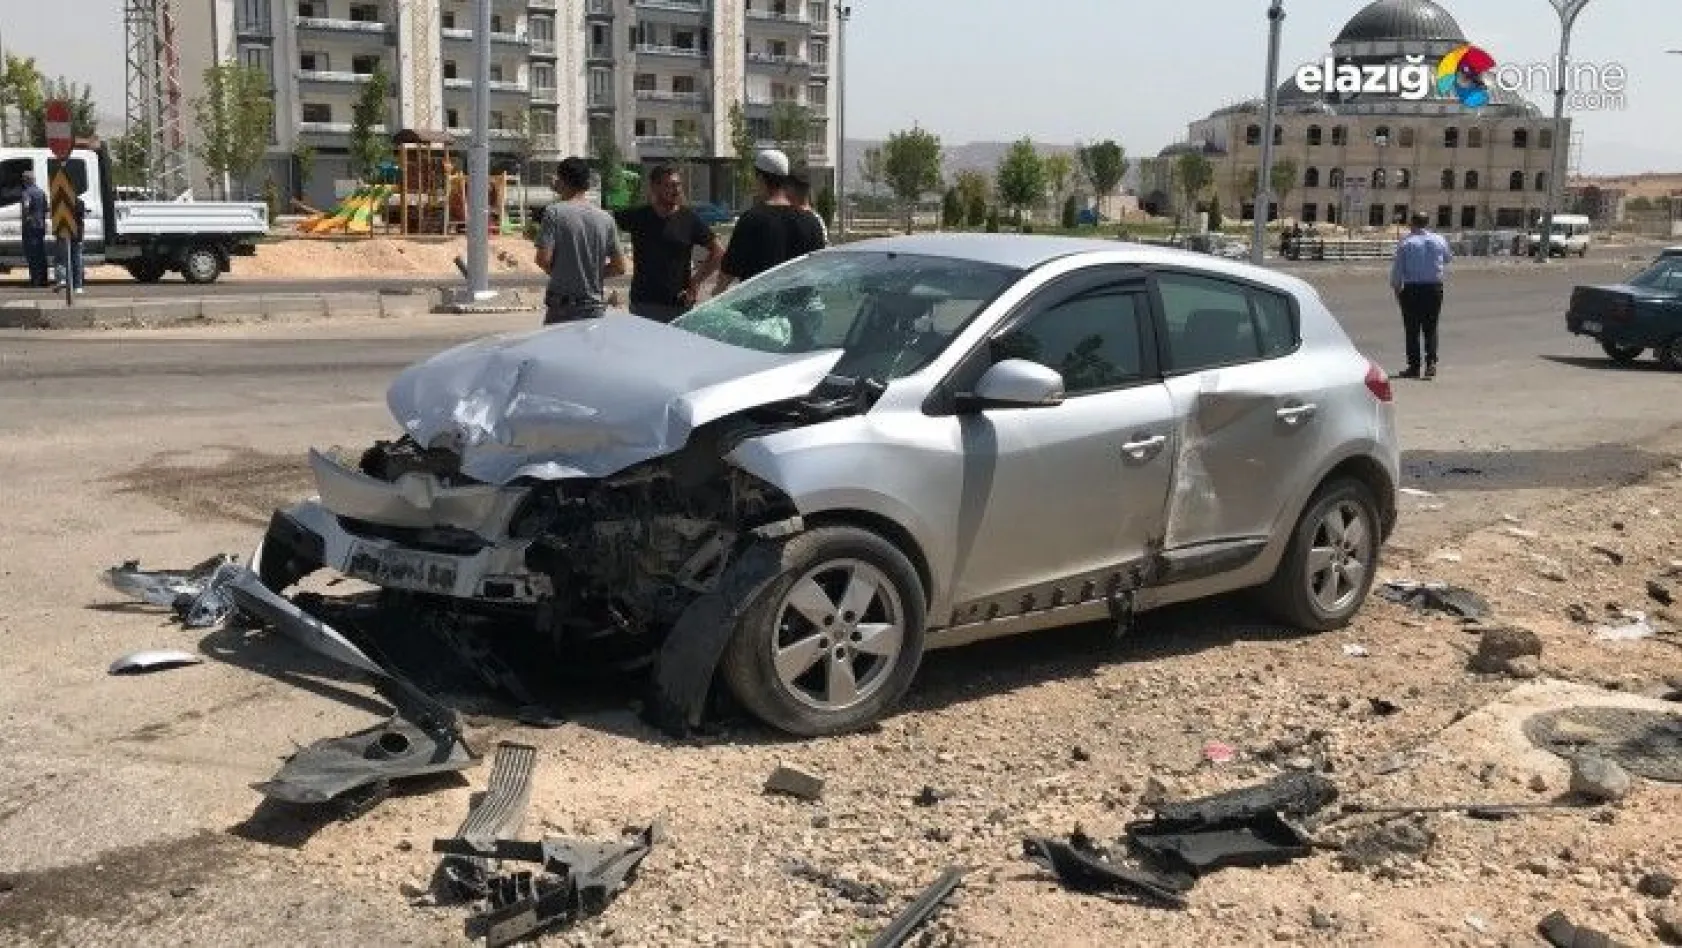 Elazığ'da iki otomobil çarpıştı: 8 yaralı